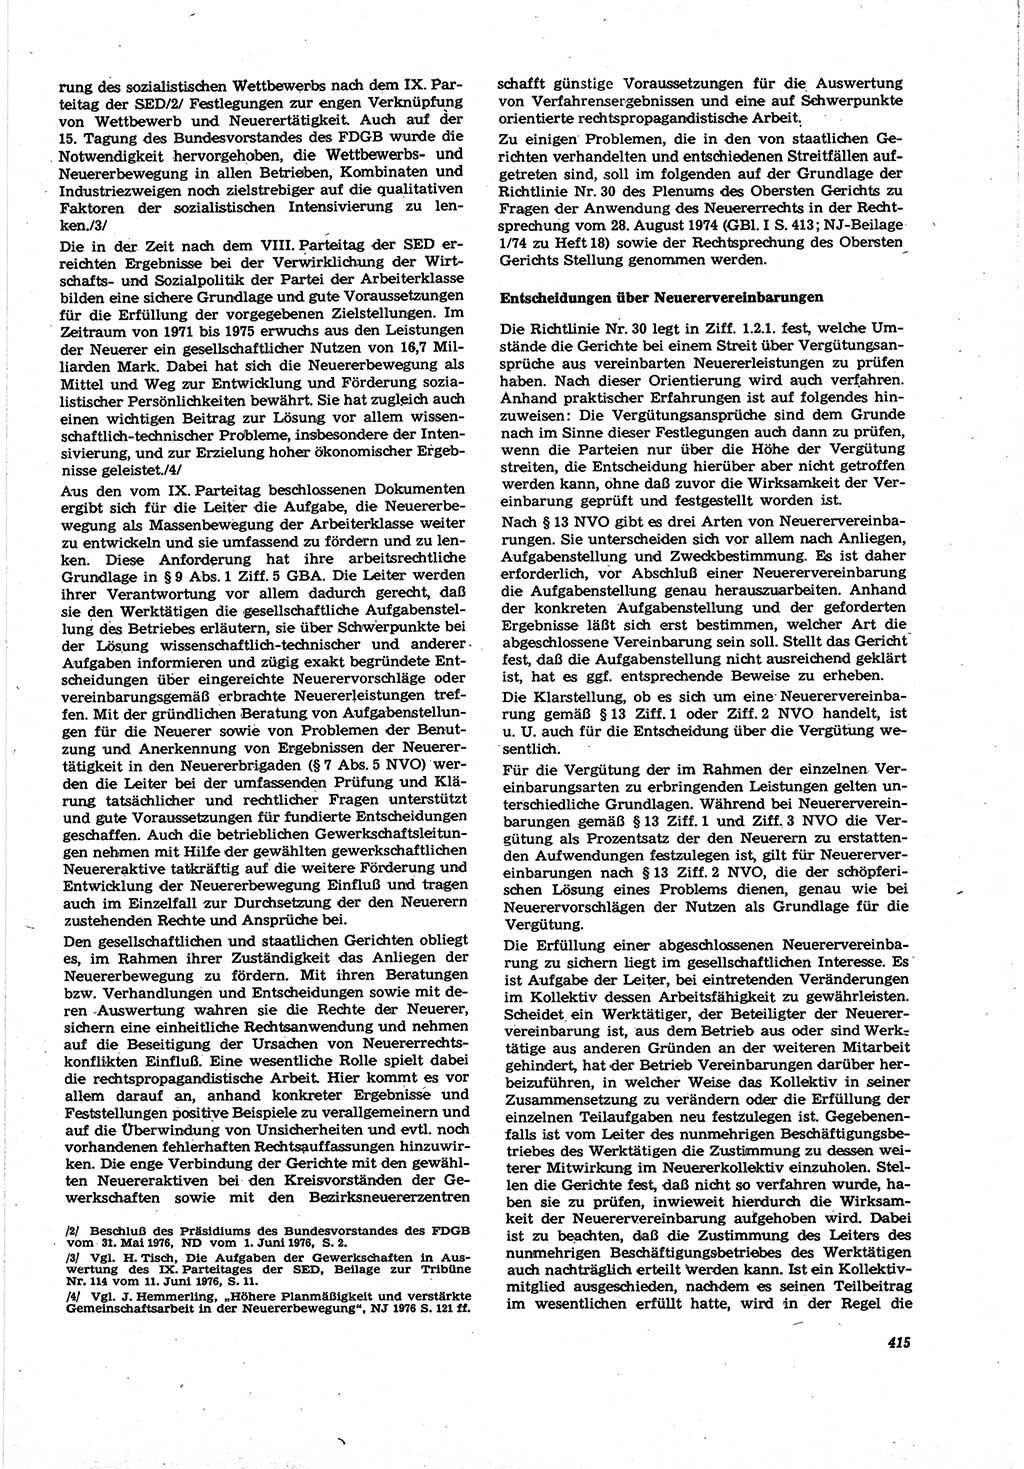 Neue Justiz (NJ), Zeitschrift für Recht und Rechtswissenschaft [Deutsche Demokratische Republik (DDR)], 30. Jahrgang 1976, Seite 415 (NJ DDR 1976, S. 415)